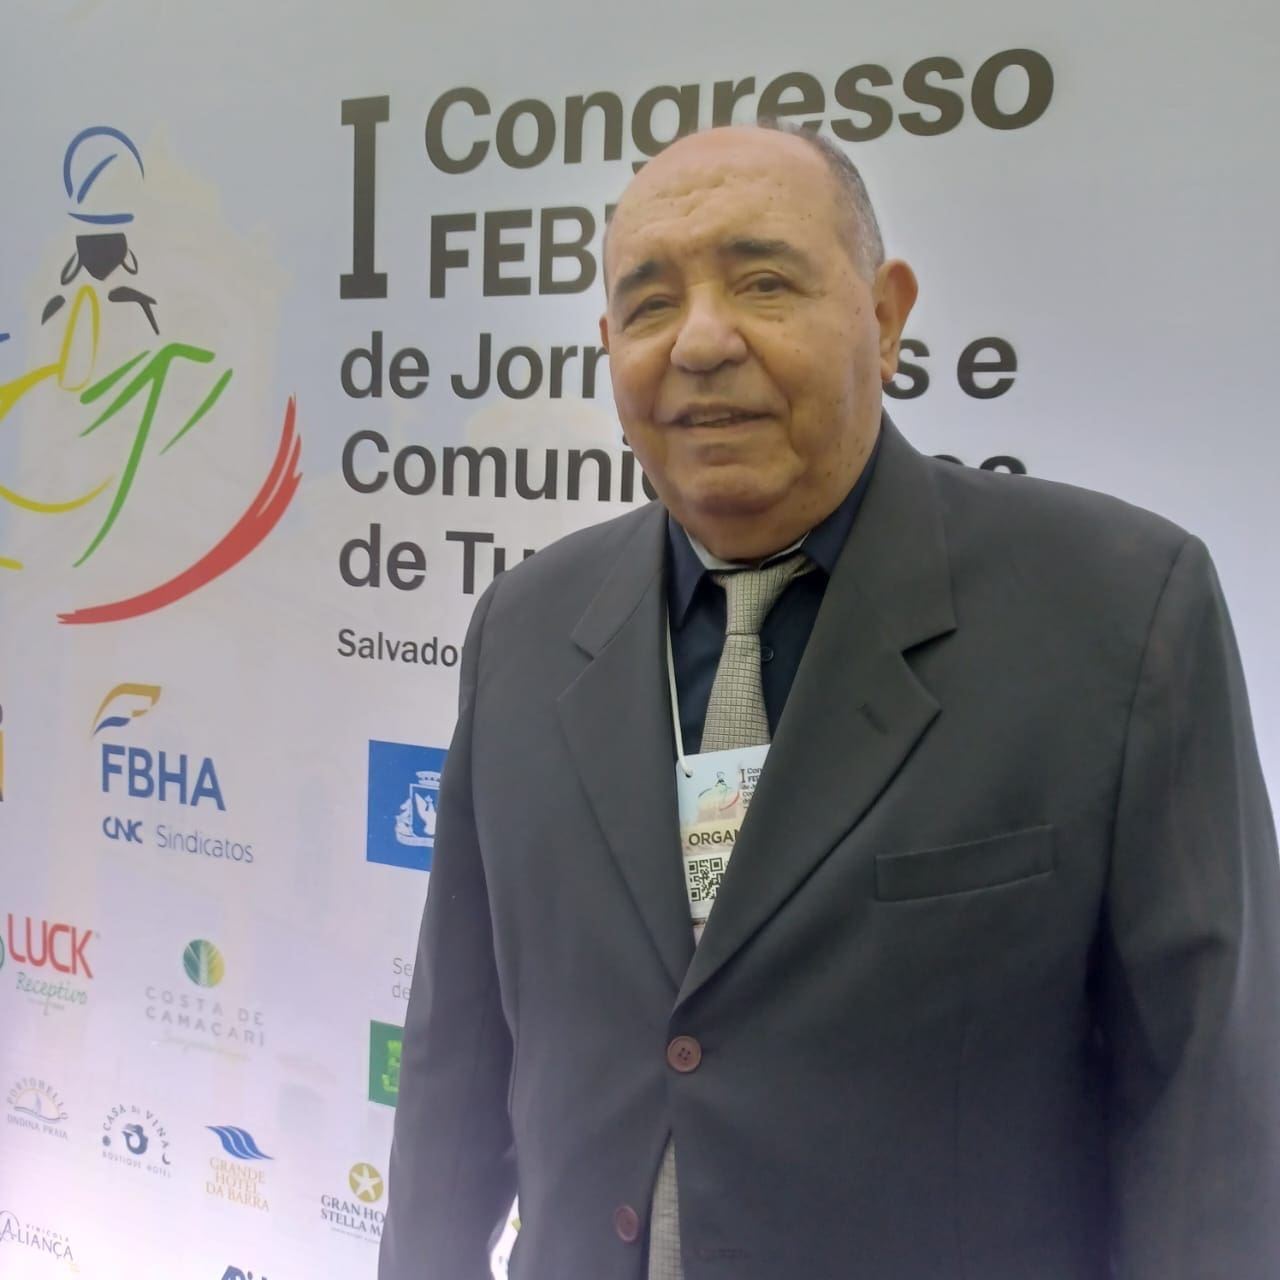 Gorgonio Loureiro, presidente da Febtur, no I Congresso FEBTUR